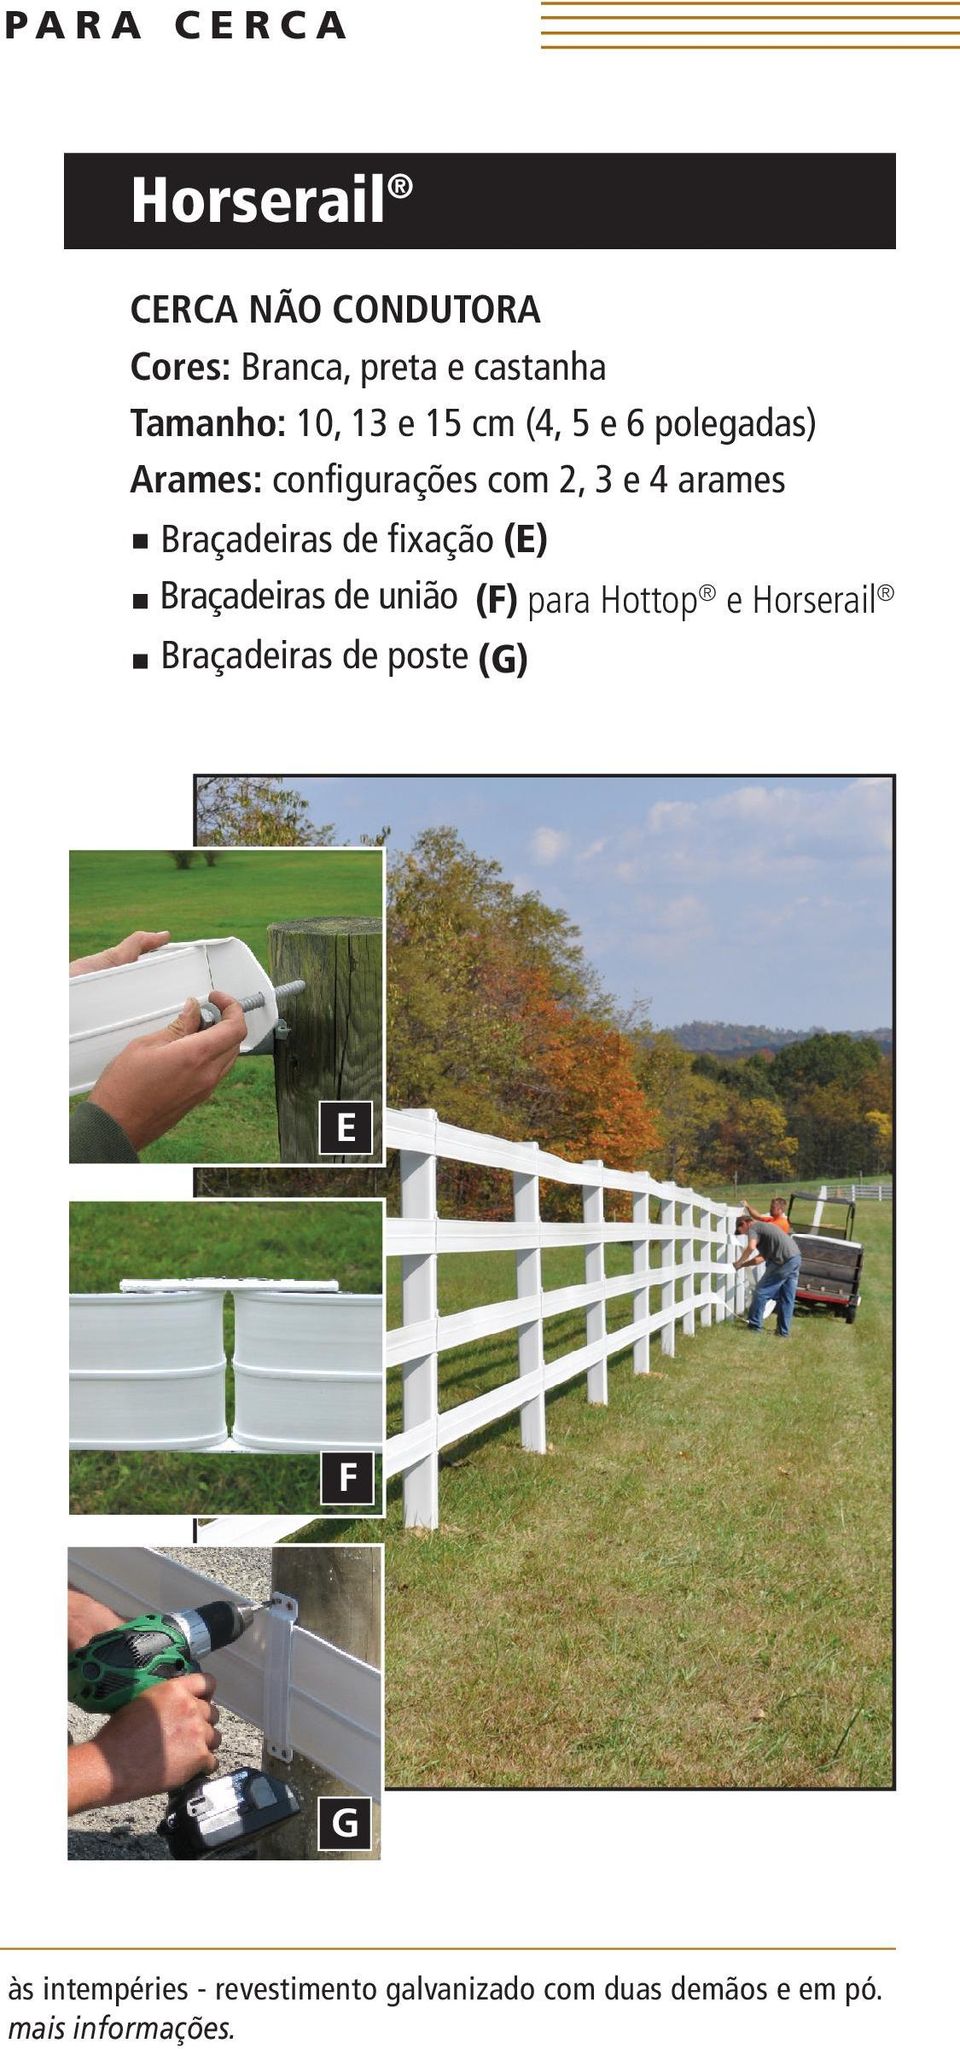 de fixação (E) Braçadeiras de união (F) para Hottop e Horserail Braçadeiras de poste (G)